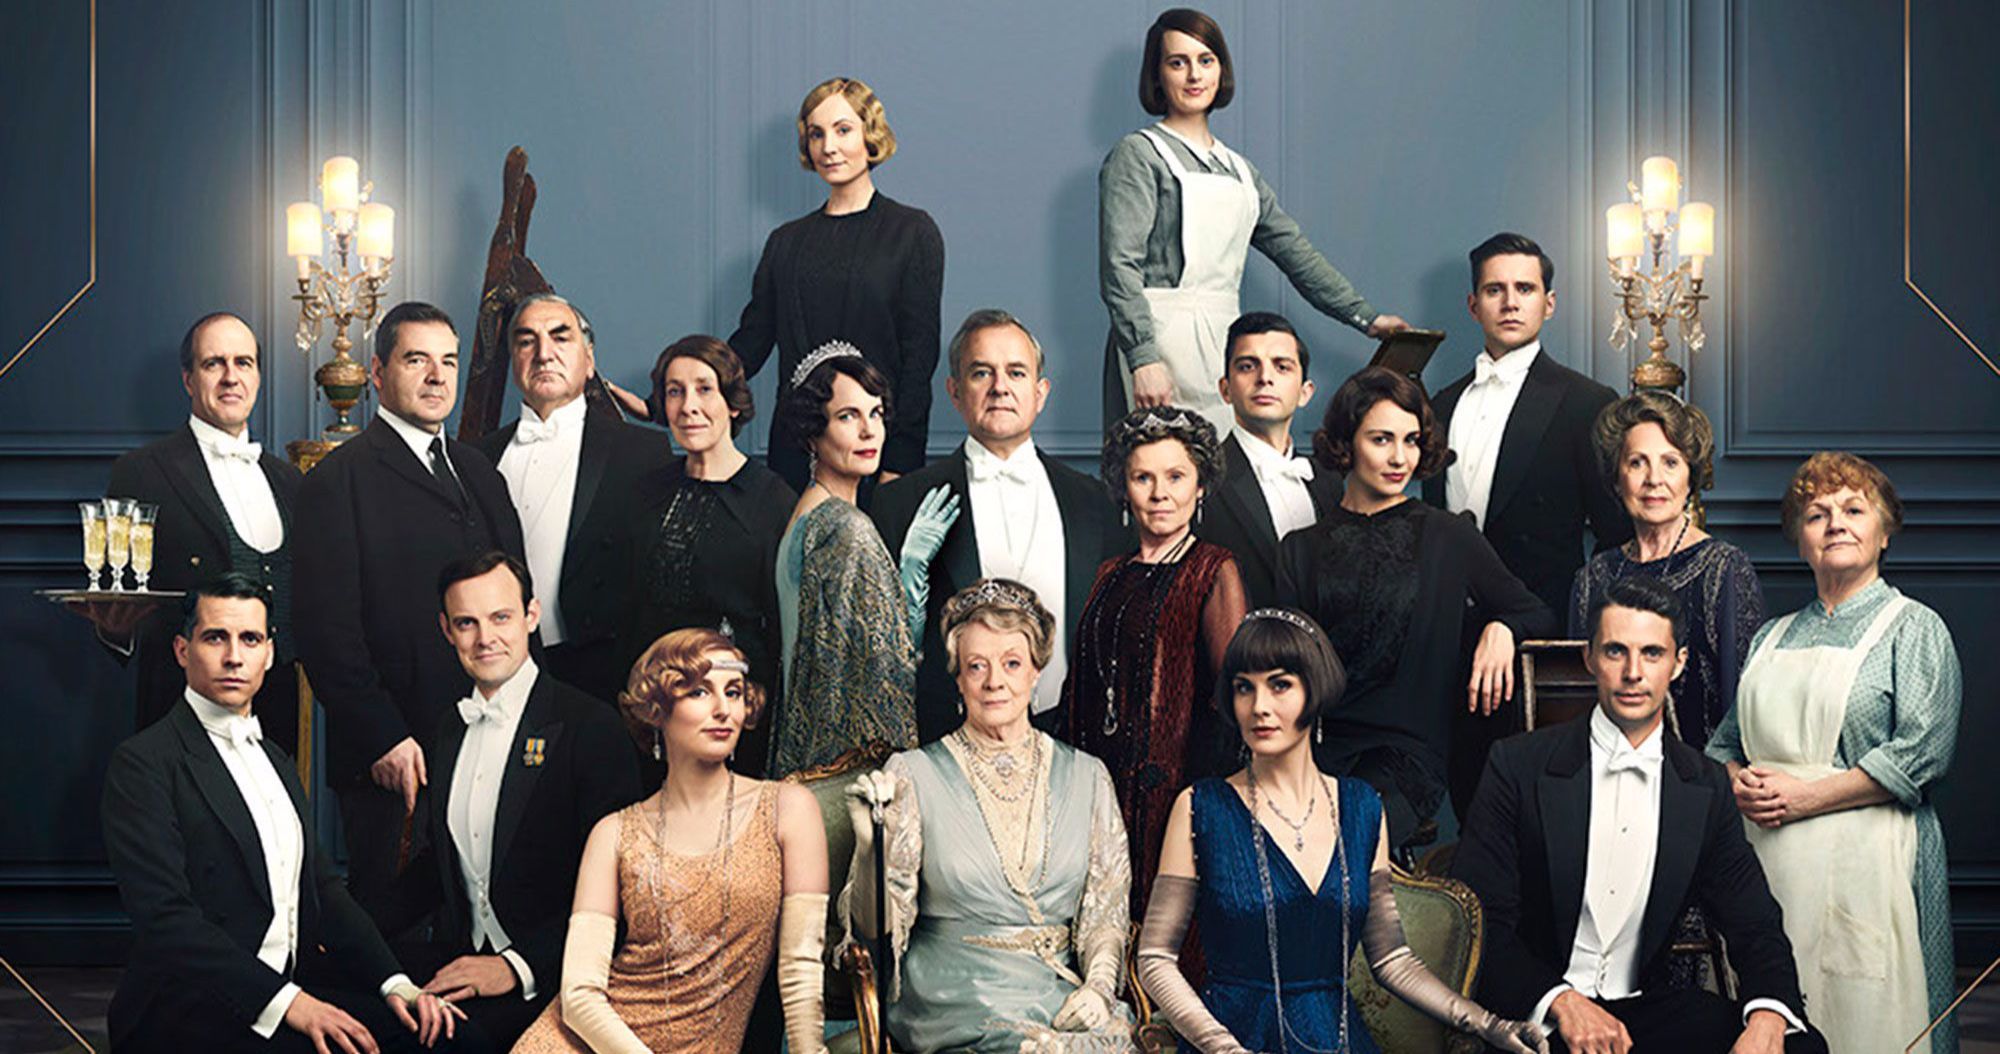 Downton Abbey Movie Tickets Go on Sale as New Sneak Peek Featurette Arrives